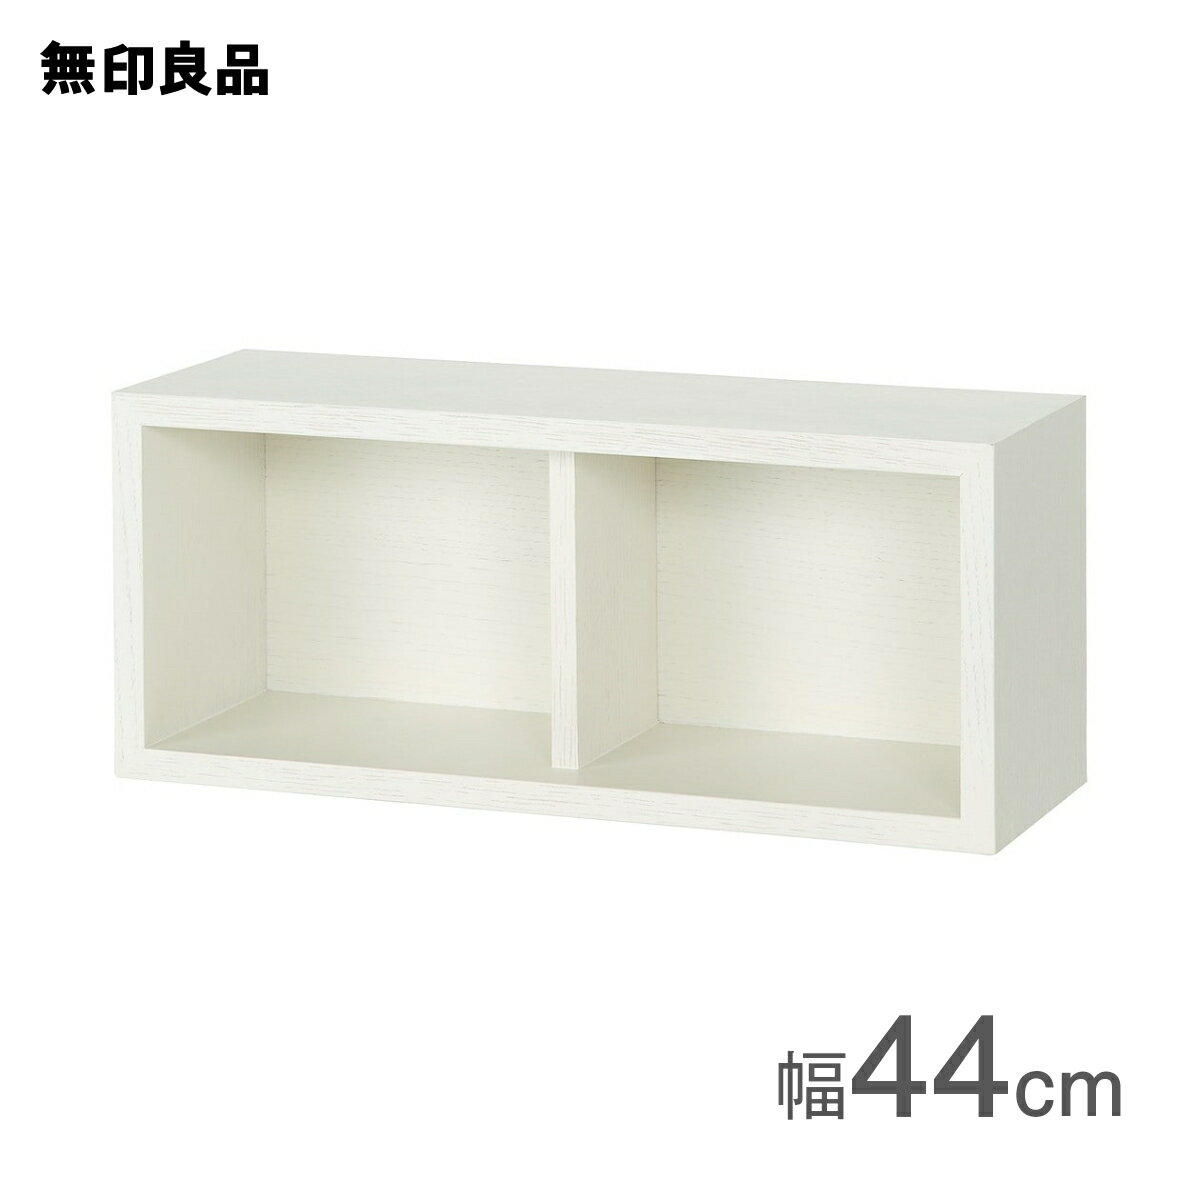 壁に付けられる家具箱 オーク材突板 ライトグレー44cm